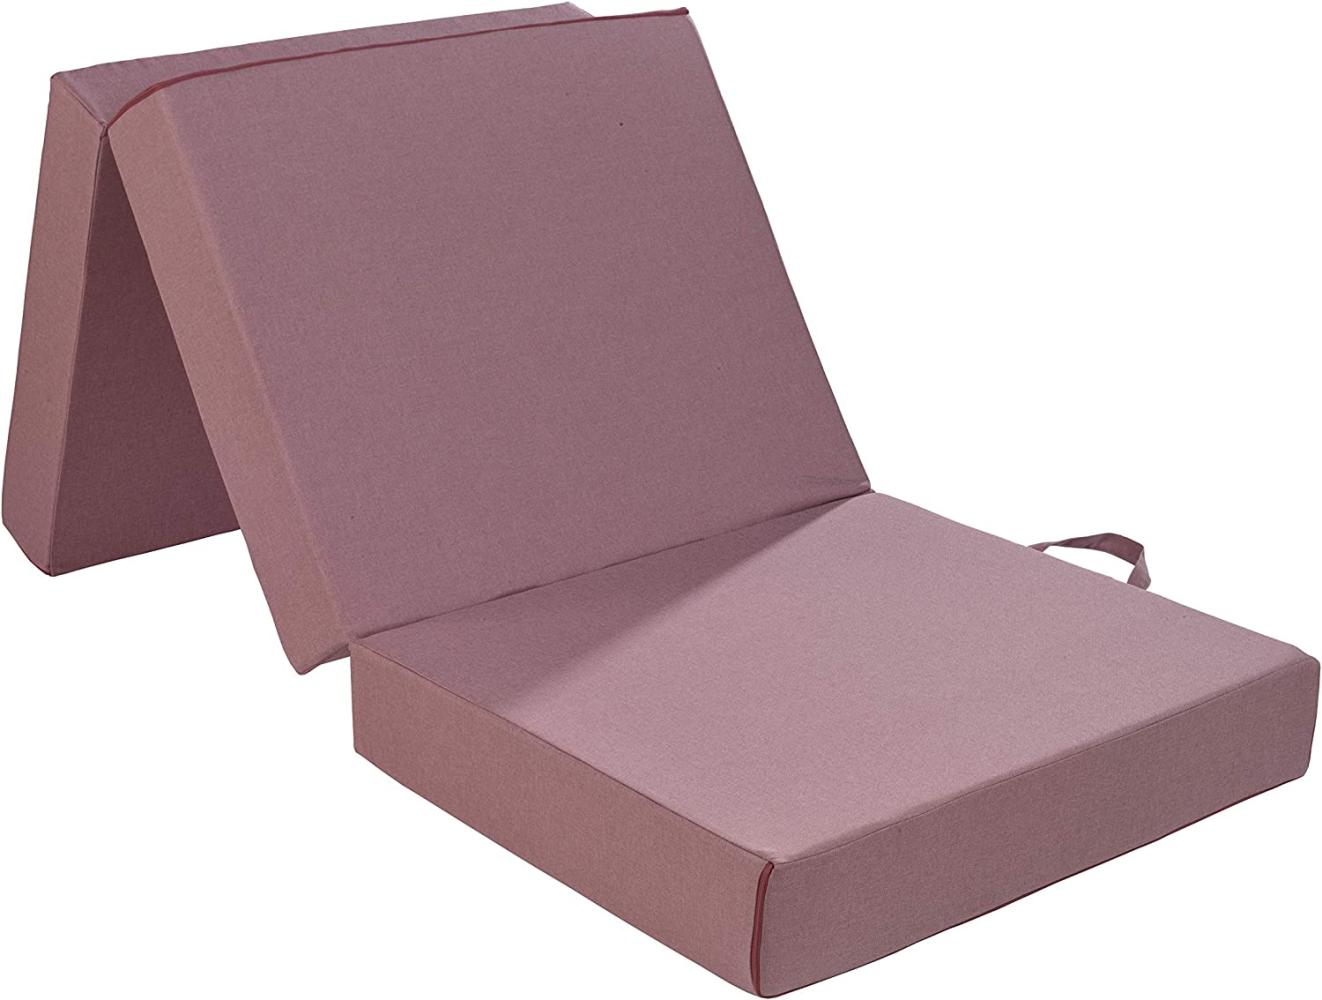 Traumnacht Gästematratze de Luxe mit hochwertiger Viscoauflage ohne Husse, 75 x 195 x 14 cm, rosa, produziert nach deutschem Qualitätsstandard Bild 1